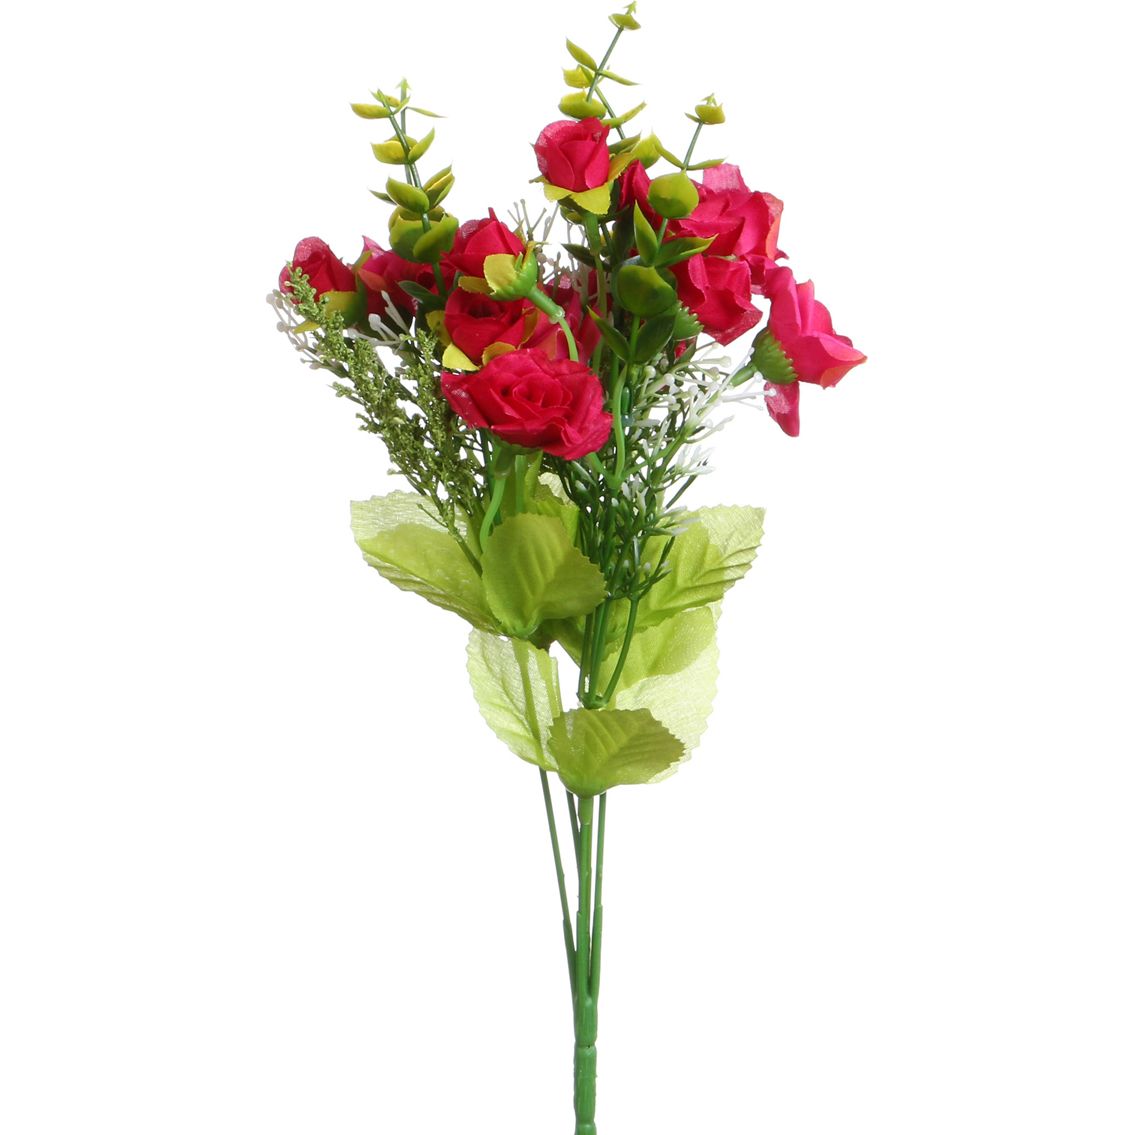 Искусственный цветок Чайная Роза (31 см), размер 31 см hpff378656 Искусственный цветок Чайная Роза (31 см) - фото 1